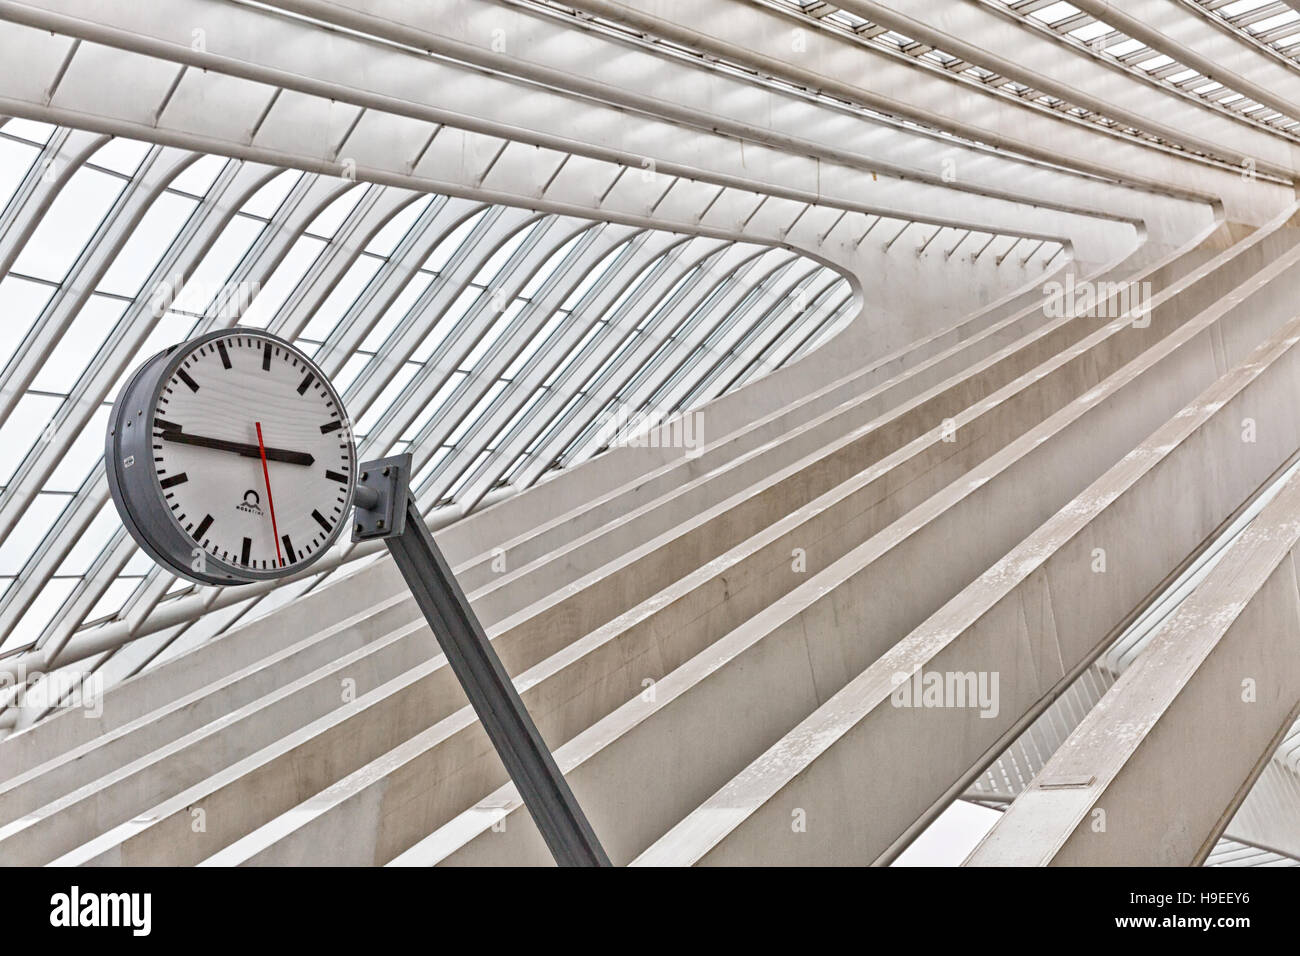 Liège, Belgique - Décembre 2014 : Abstract view sur le toit avec gare horloge de la gare de Liège-Guillemins, conçue par Santiago Calatrava. Banque D'Images